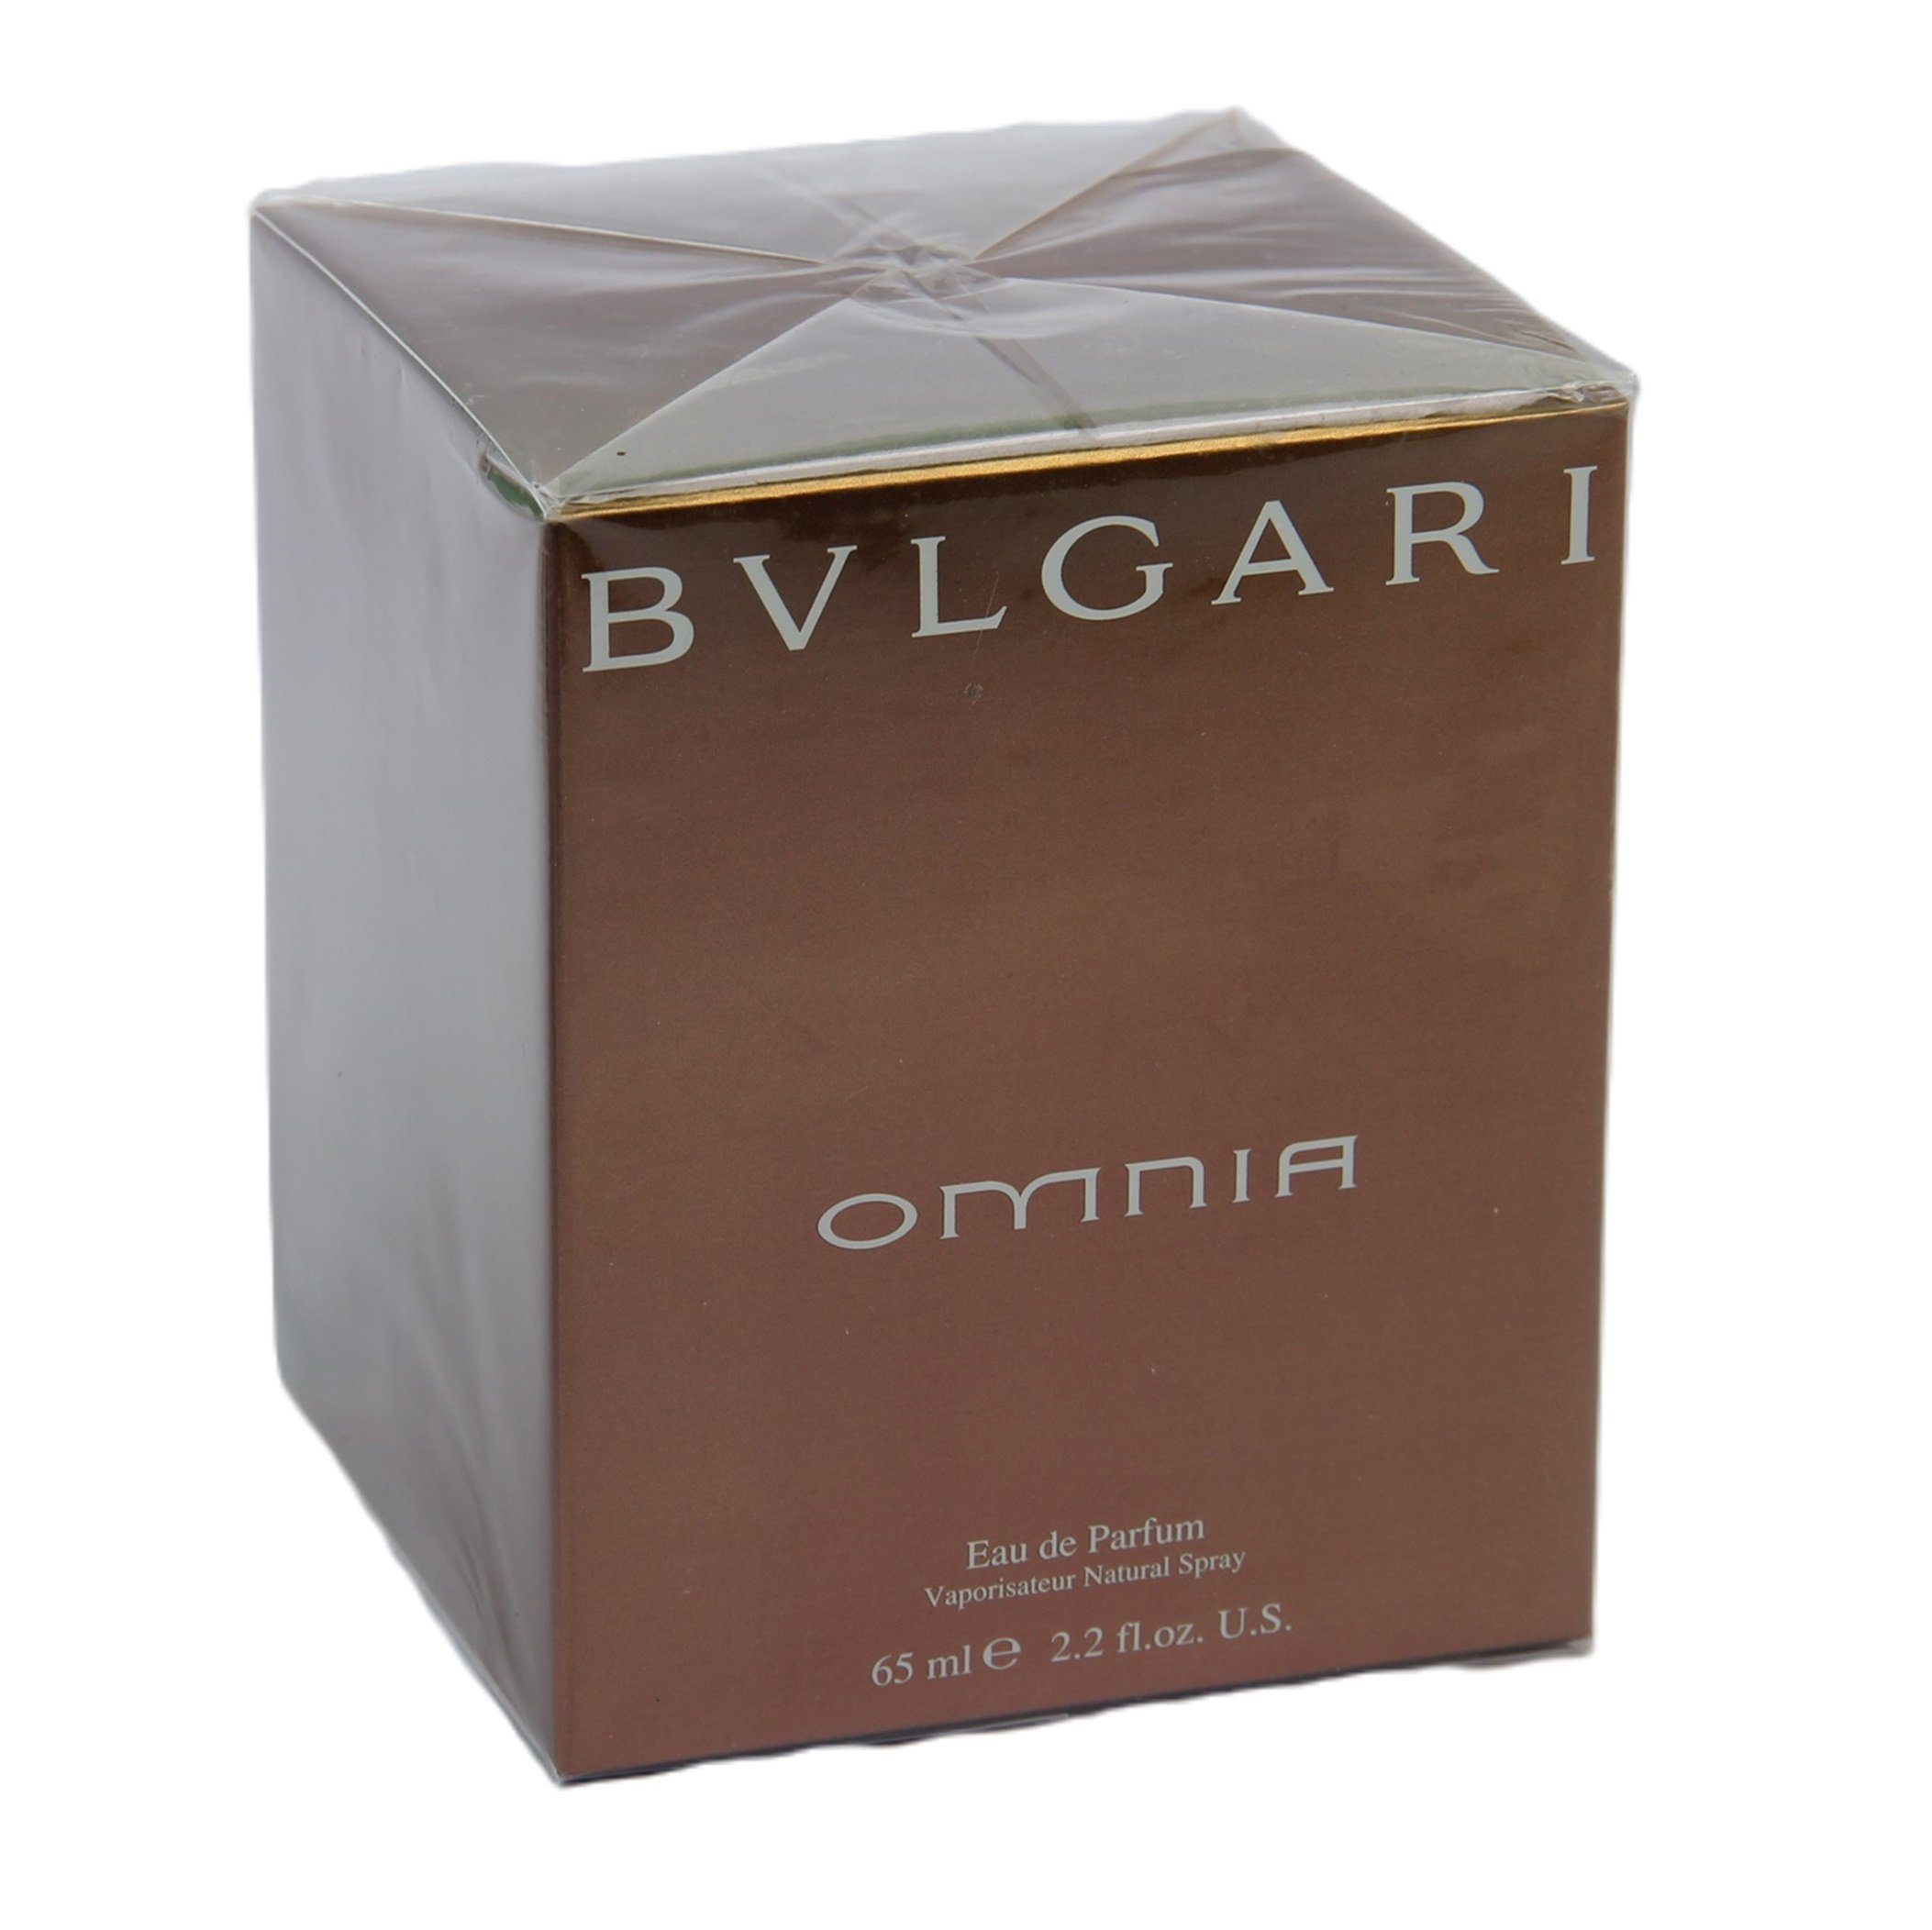 BVLGARI Eau de Parfum BVLGARI BULGARI OMNIA WOMAN EAU DE PARFUM 65 ml